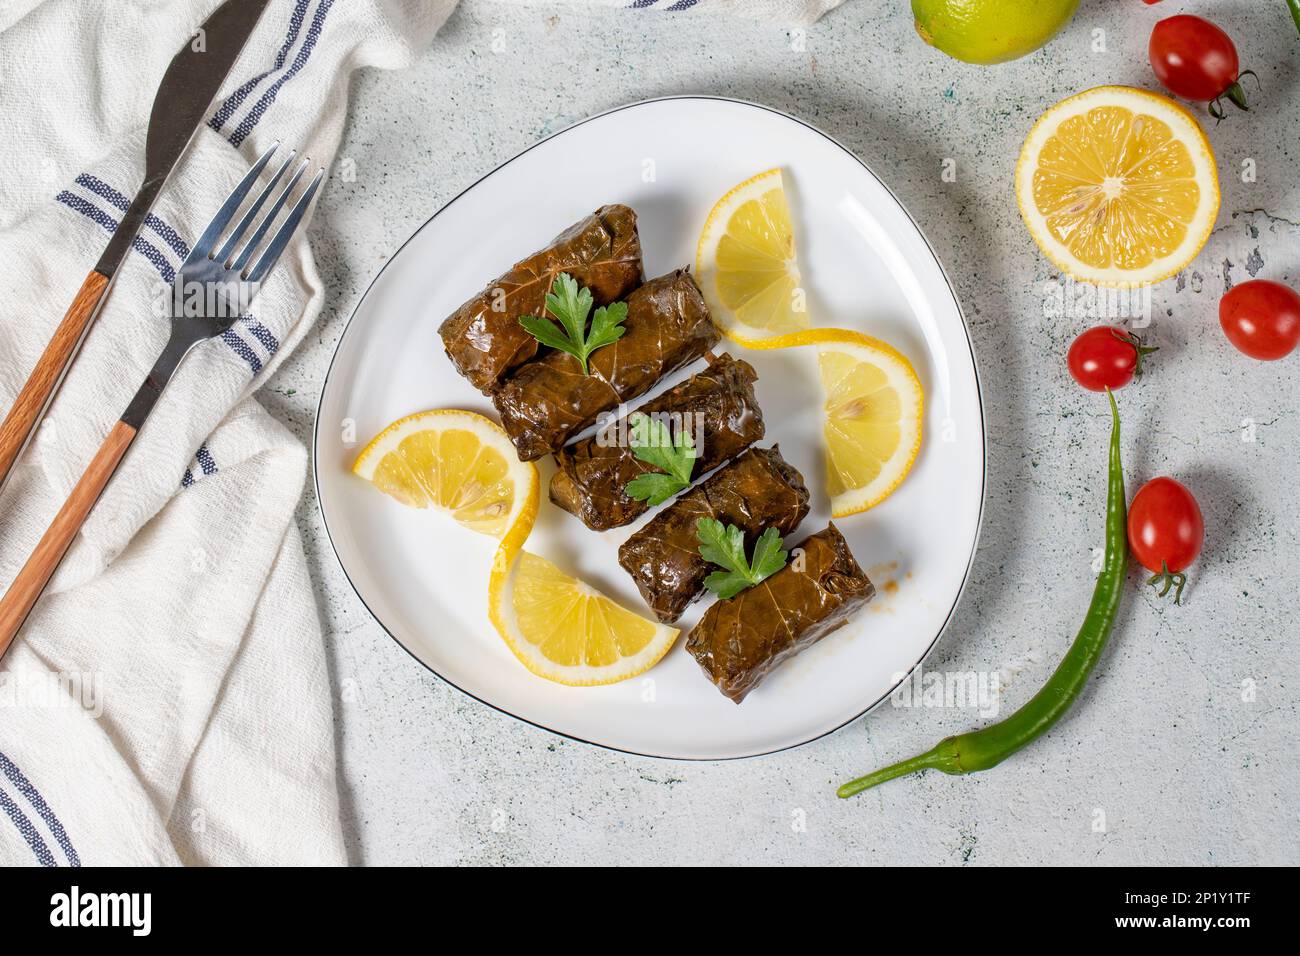 Emballage de feuilles ou dolmades apéritif une cuisine méditerranéenne de feuilles de vigne farcies. Yaprak sarma. Variétés de hors-d'œuvre turques. Vue de dessus Banque D'Images